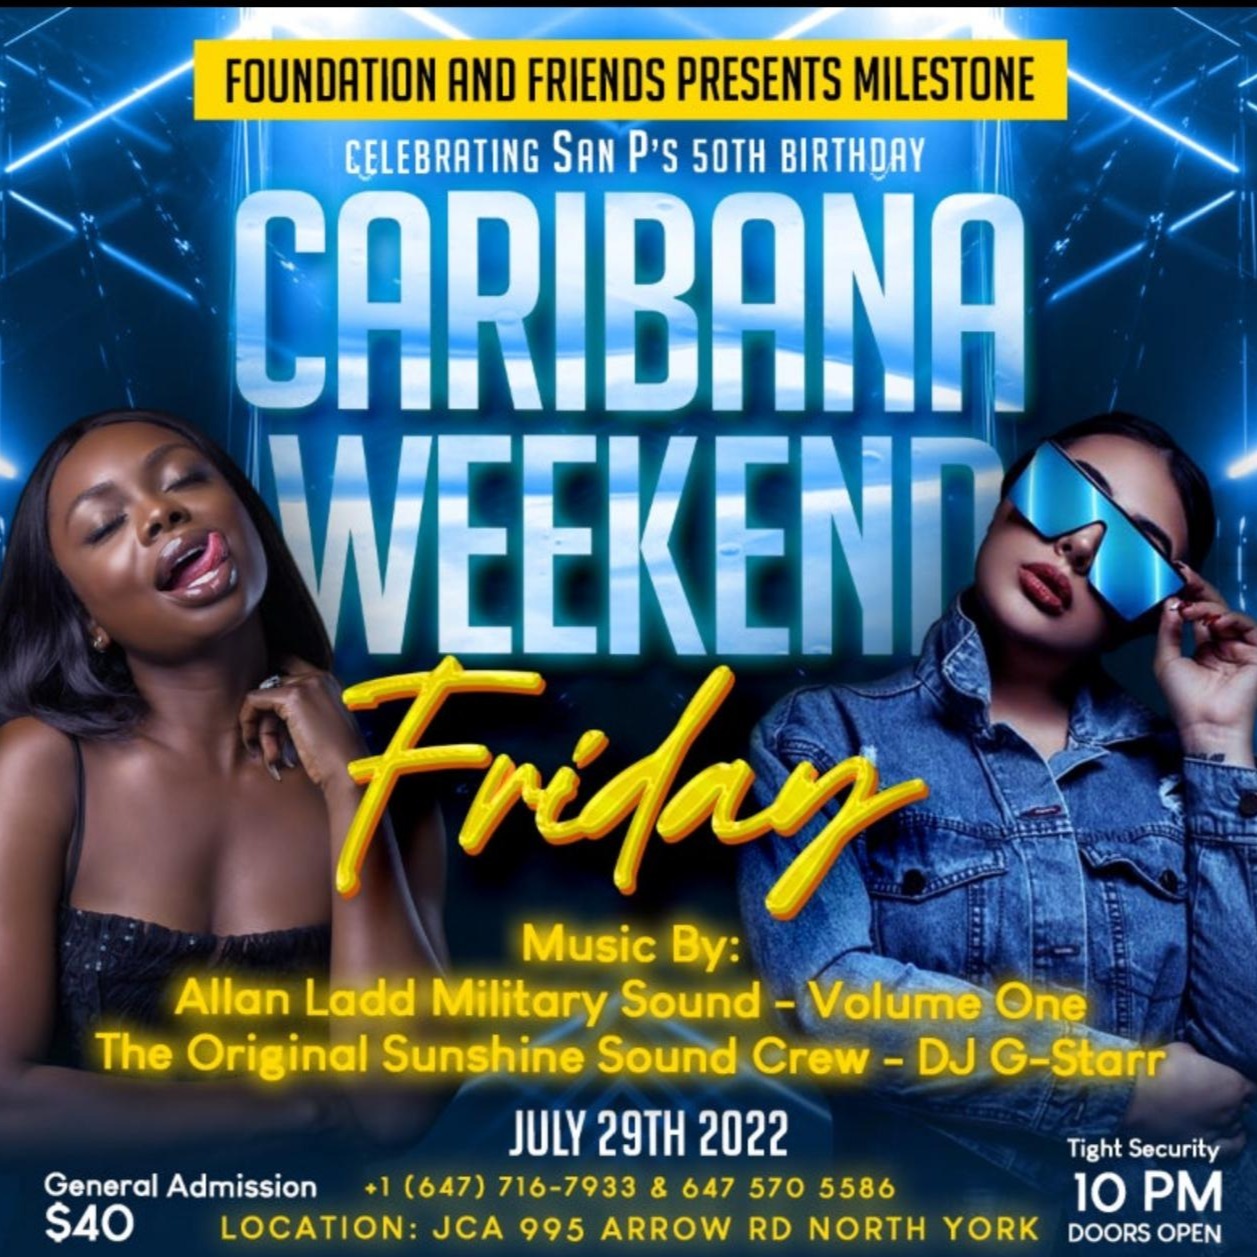 CARIBANA WEEKEND FRIDAY